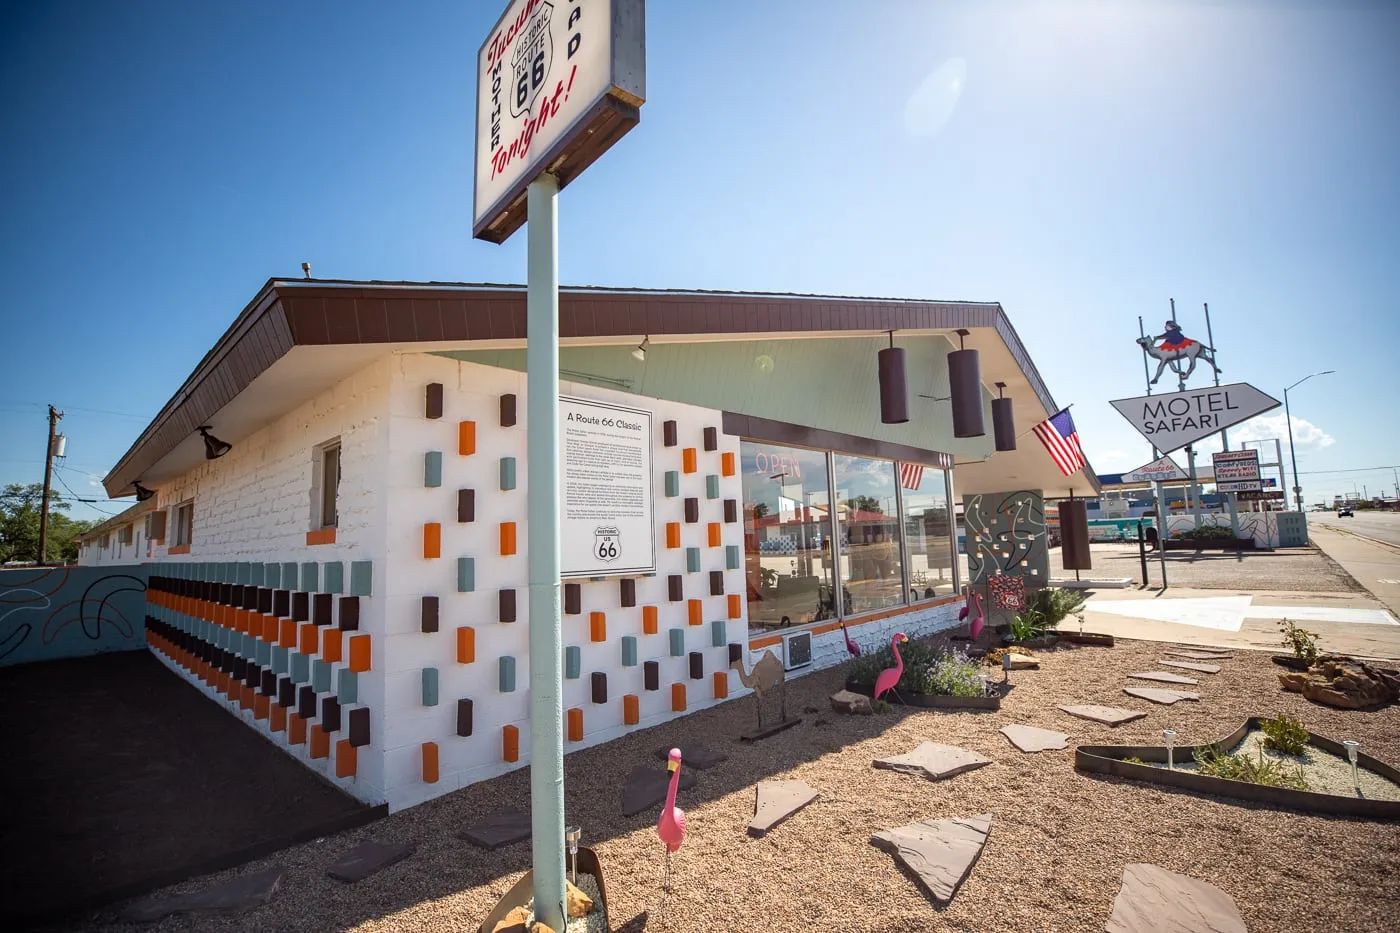 Reception area at Motel Safari in Tucumcari, New Mexico (Route 66 Motel)